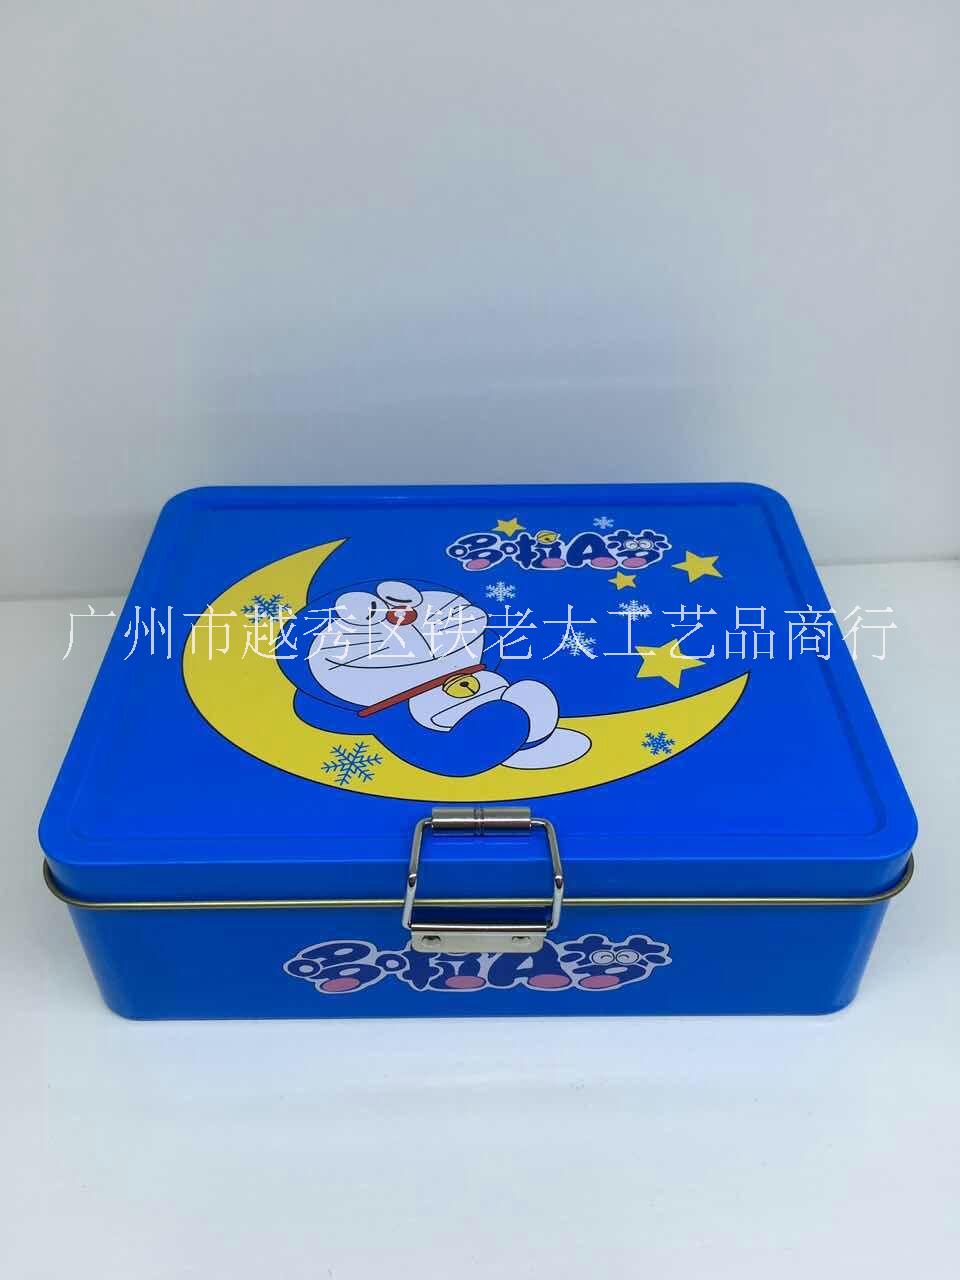 曲奇饼盒报价 曲奇饼盒厂家直销 曲奇饼盒批发价格 曲奇饼盒定制价